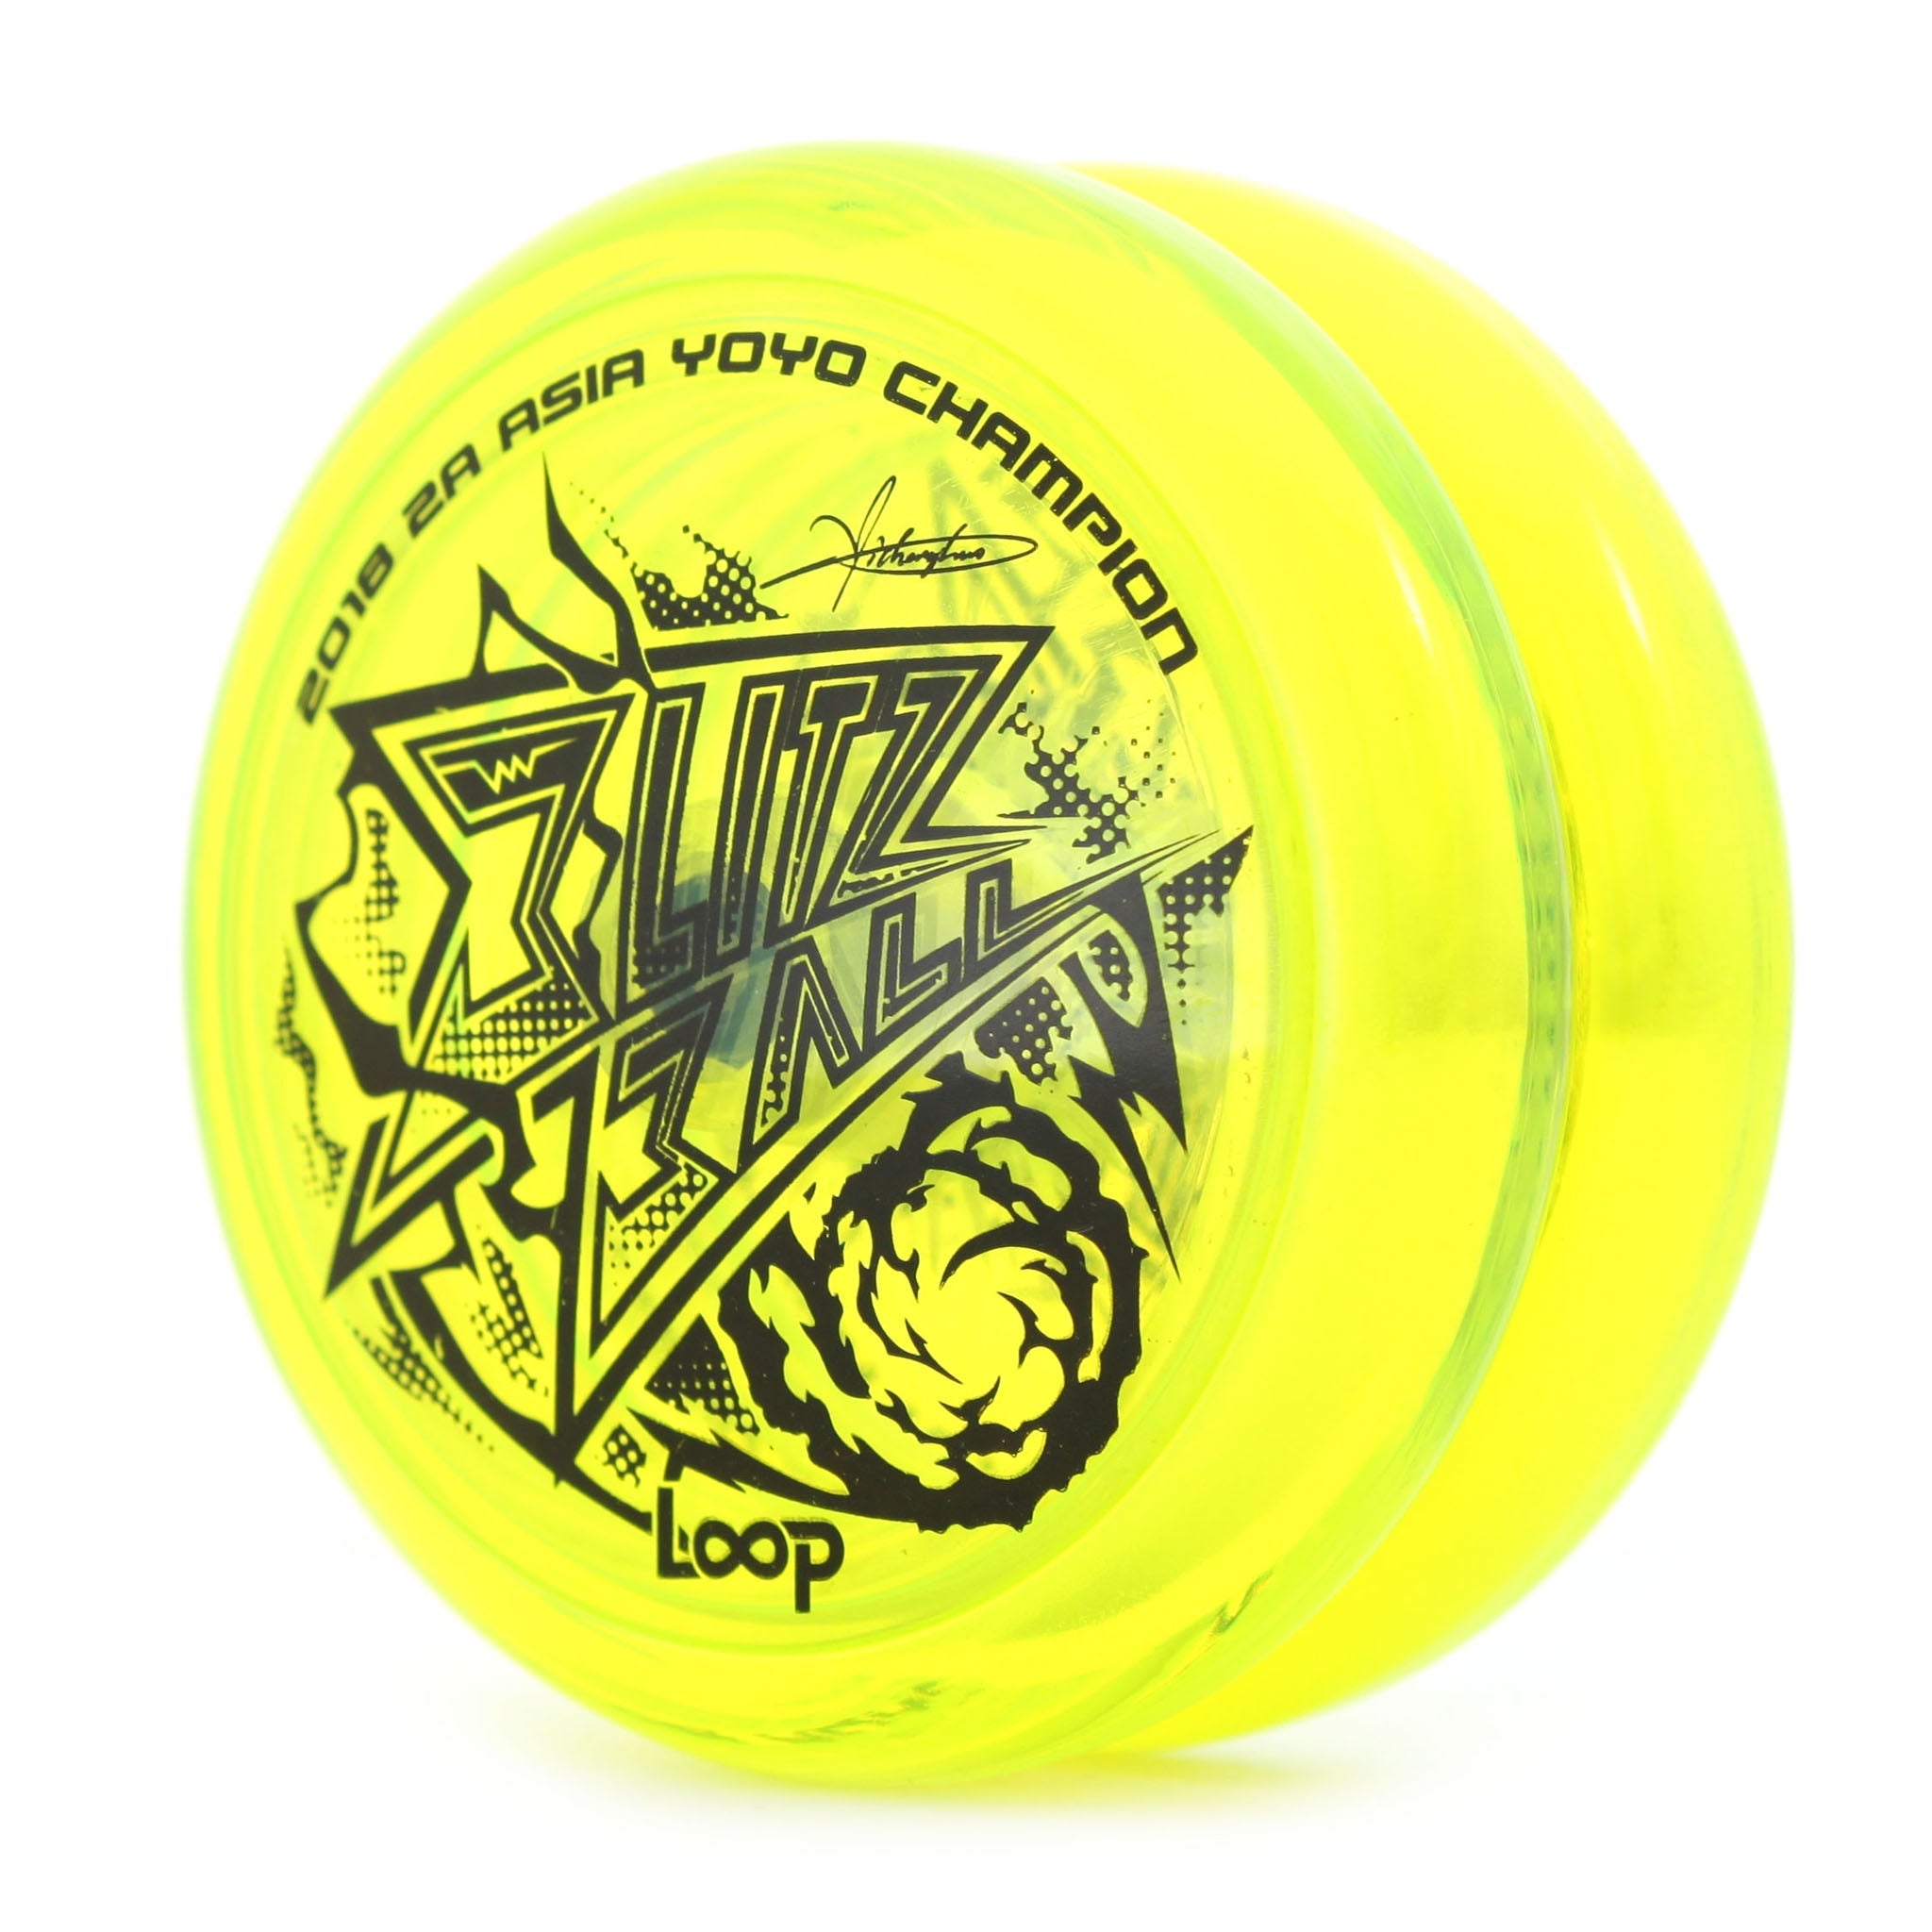 Blitz Ball Ver. 2.0